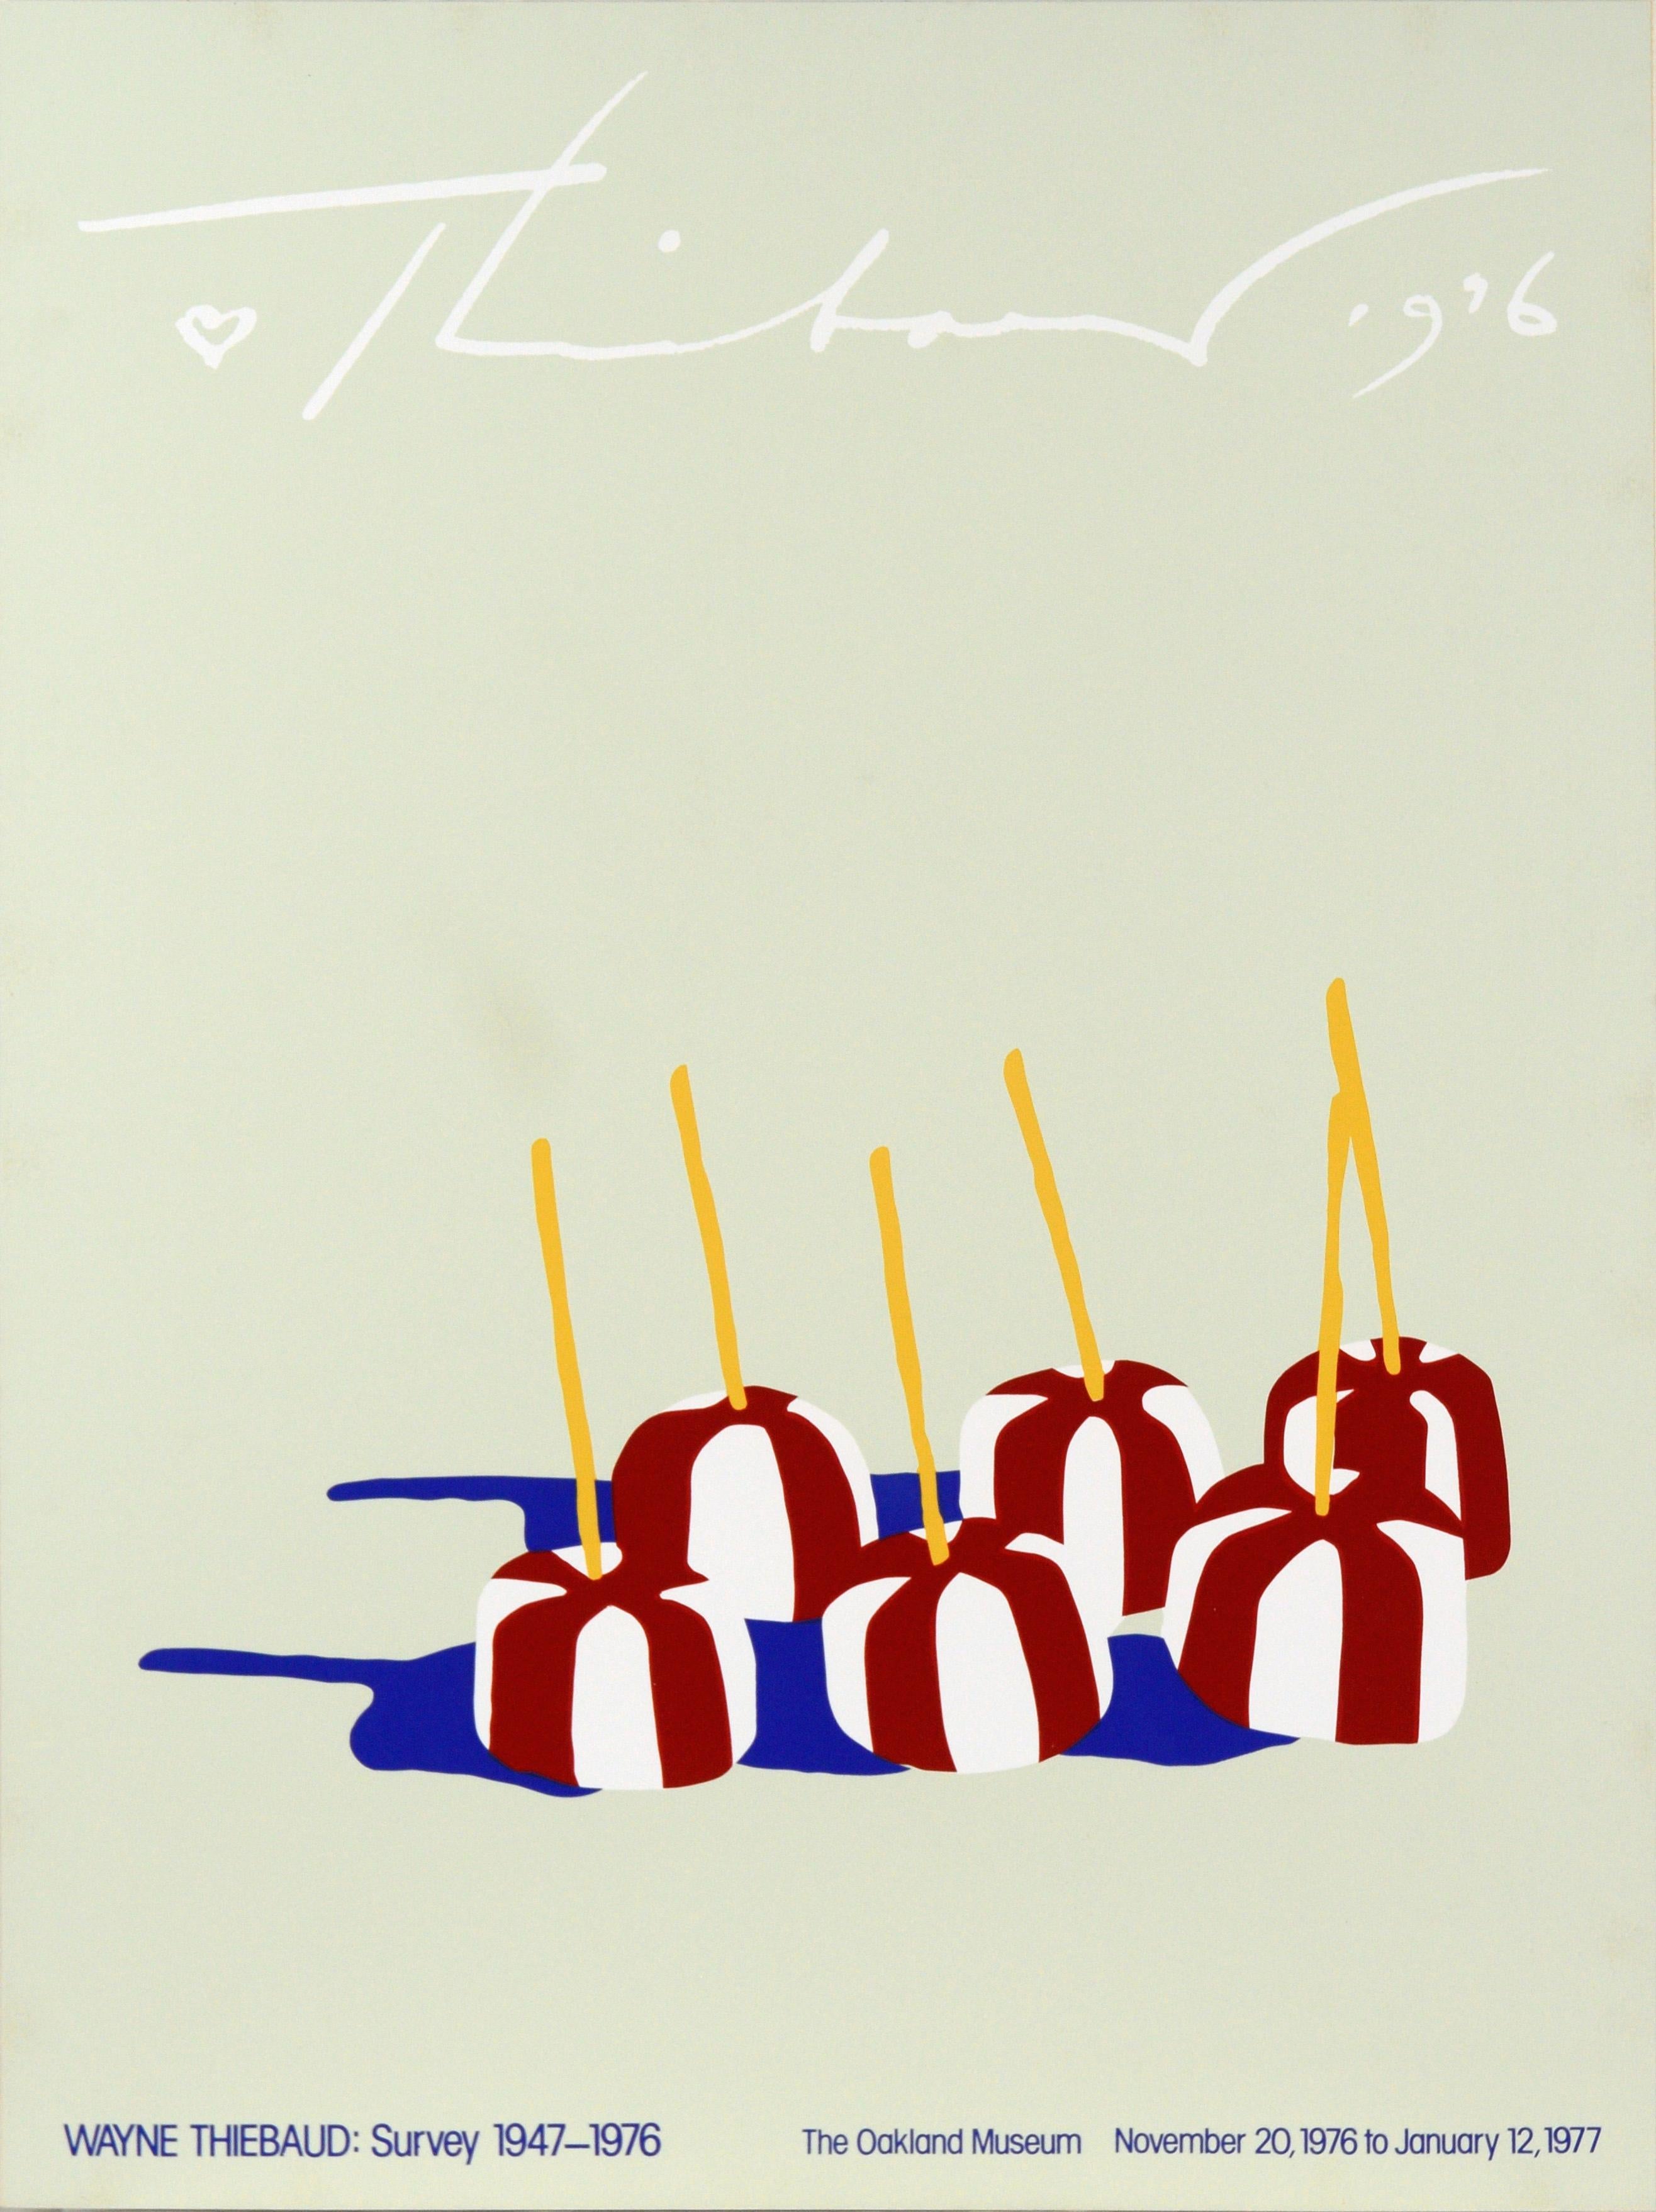 Affiche du Musée d'Oakland « Wayne Thiebaud : Survey 1947-1976 » - Print de (After) Wayne Thiebaud